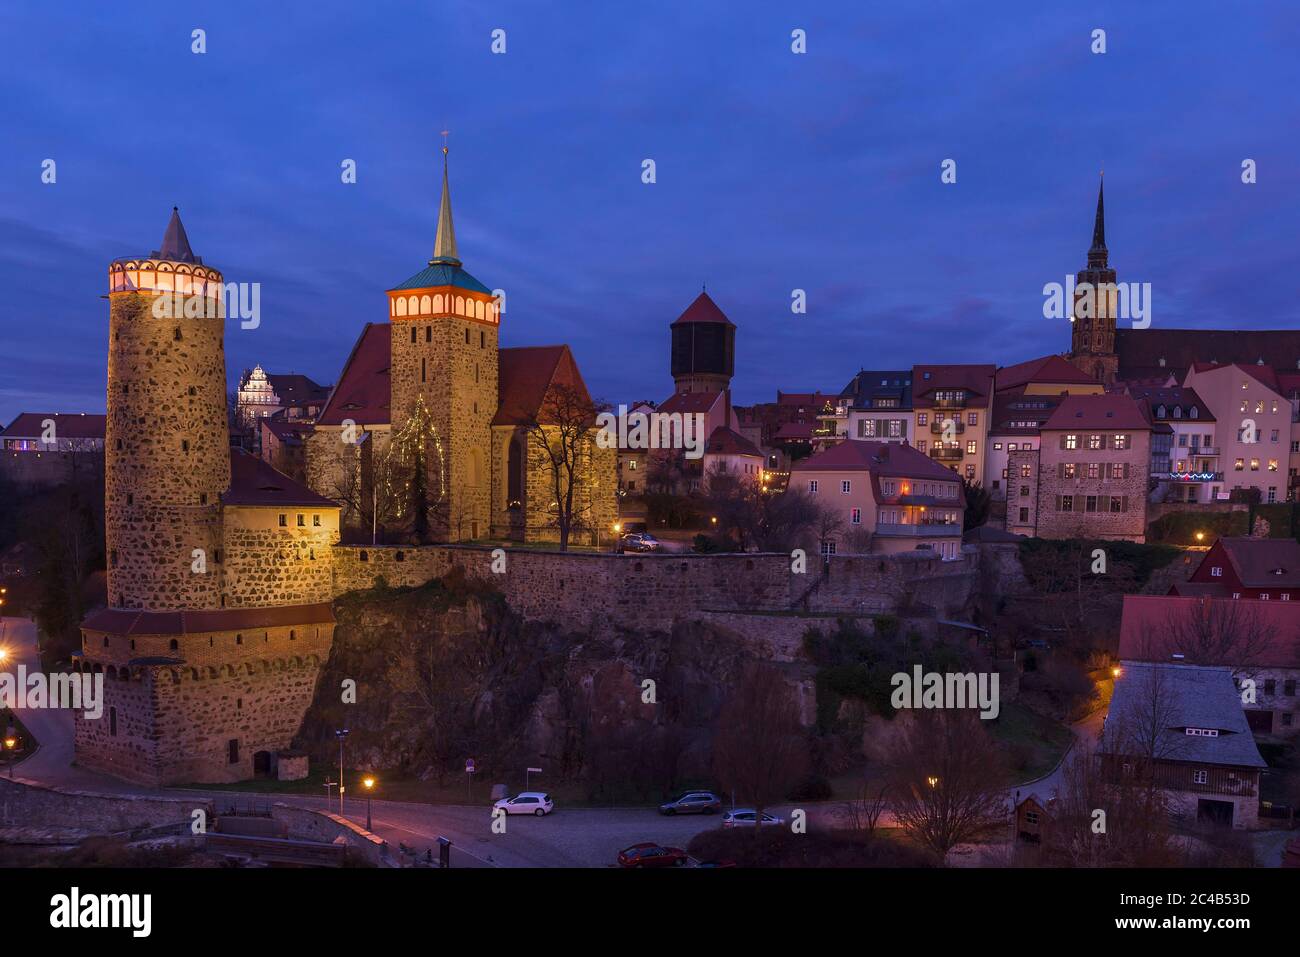 Vista della città vecchia con torri e mura al tramonto, Bautzen, Oberlausitz, Sassonia, Germania Foto Stock